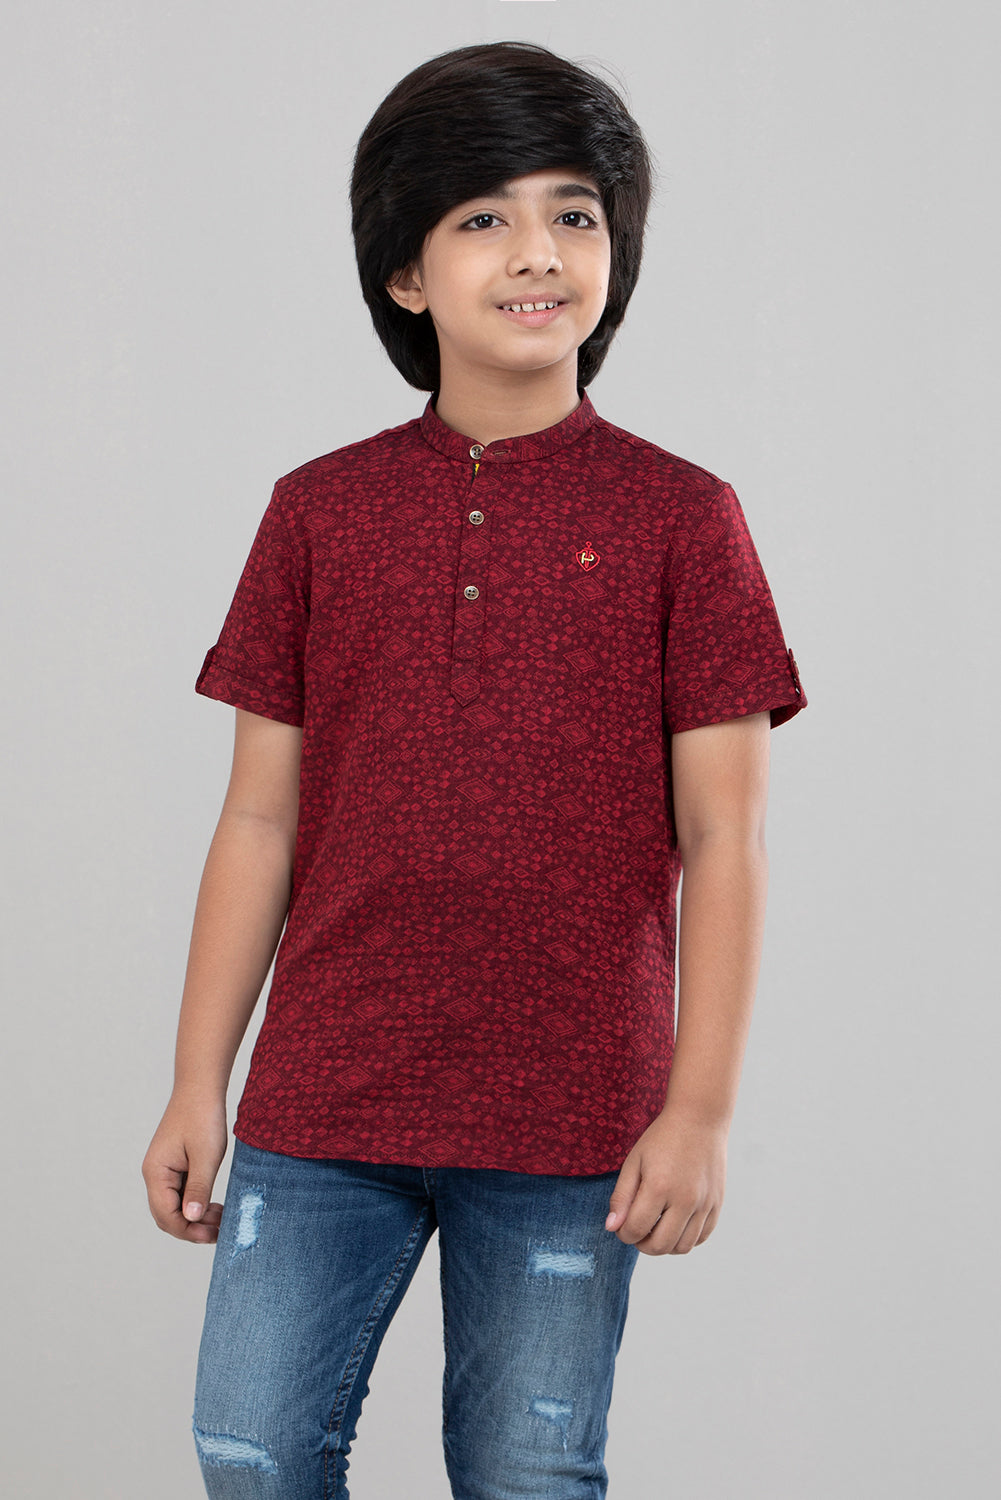 Prince Casual Shirt (2-4 Years)